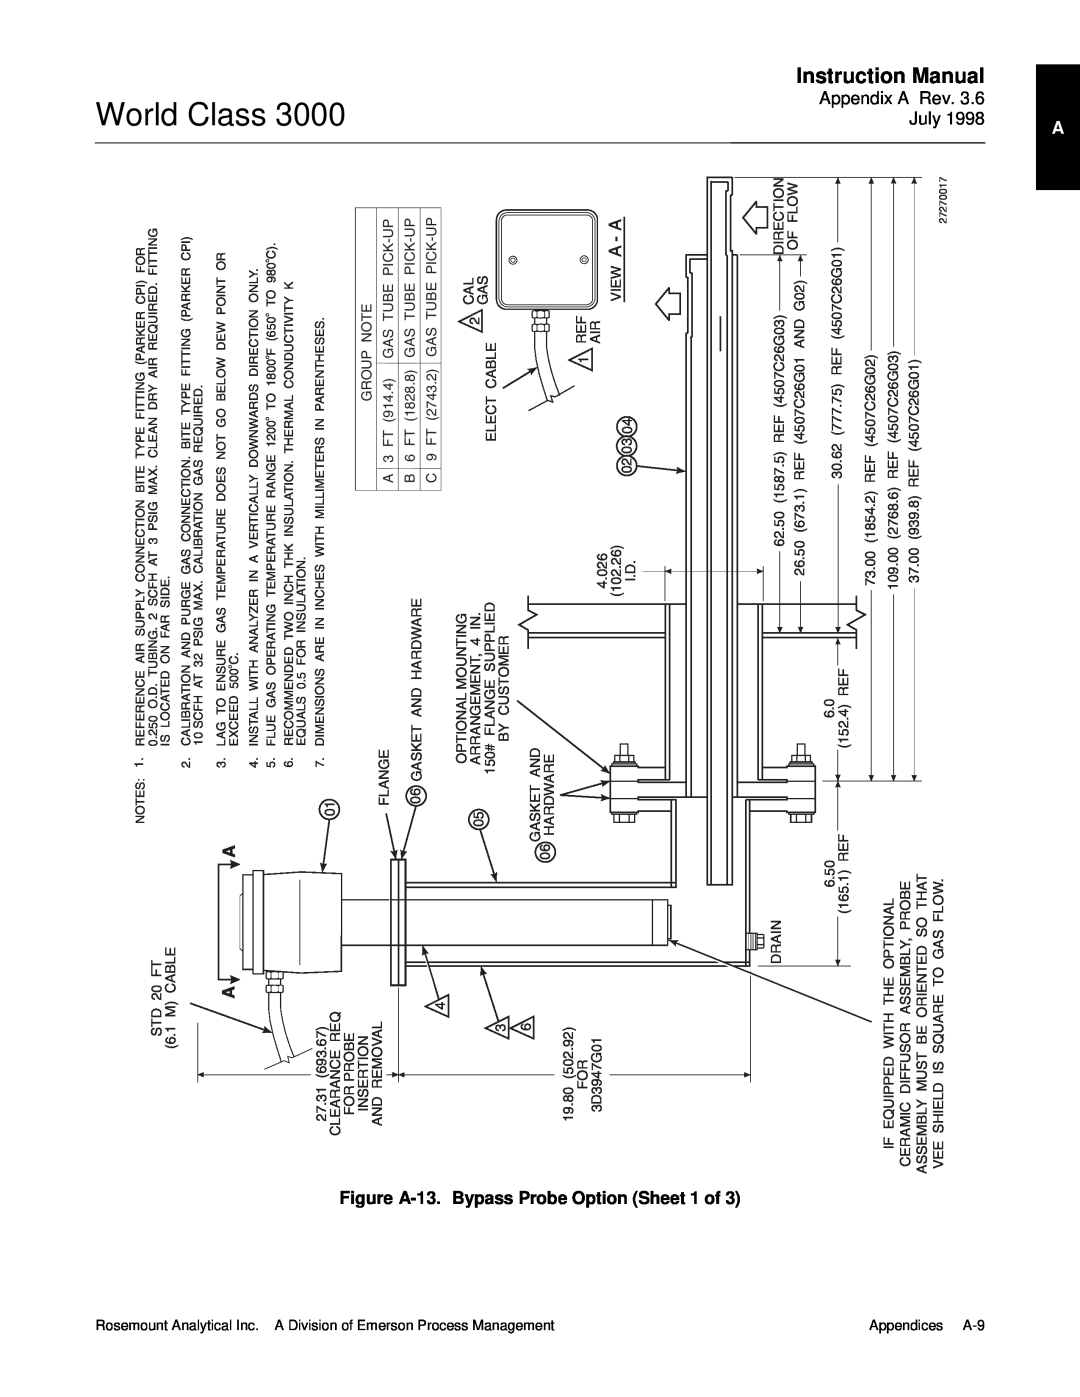 Emerson 3000 manual World Class, Figure A-13.Bypass Probe Option Sheet 1 of 